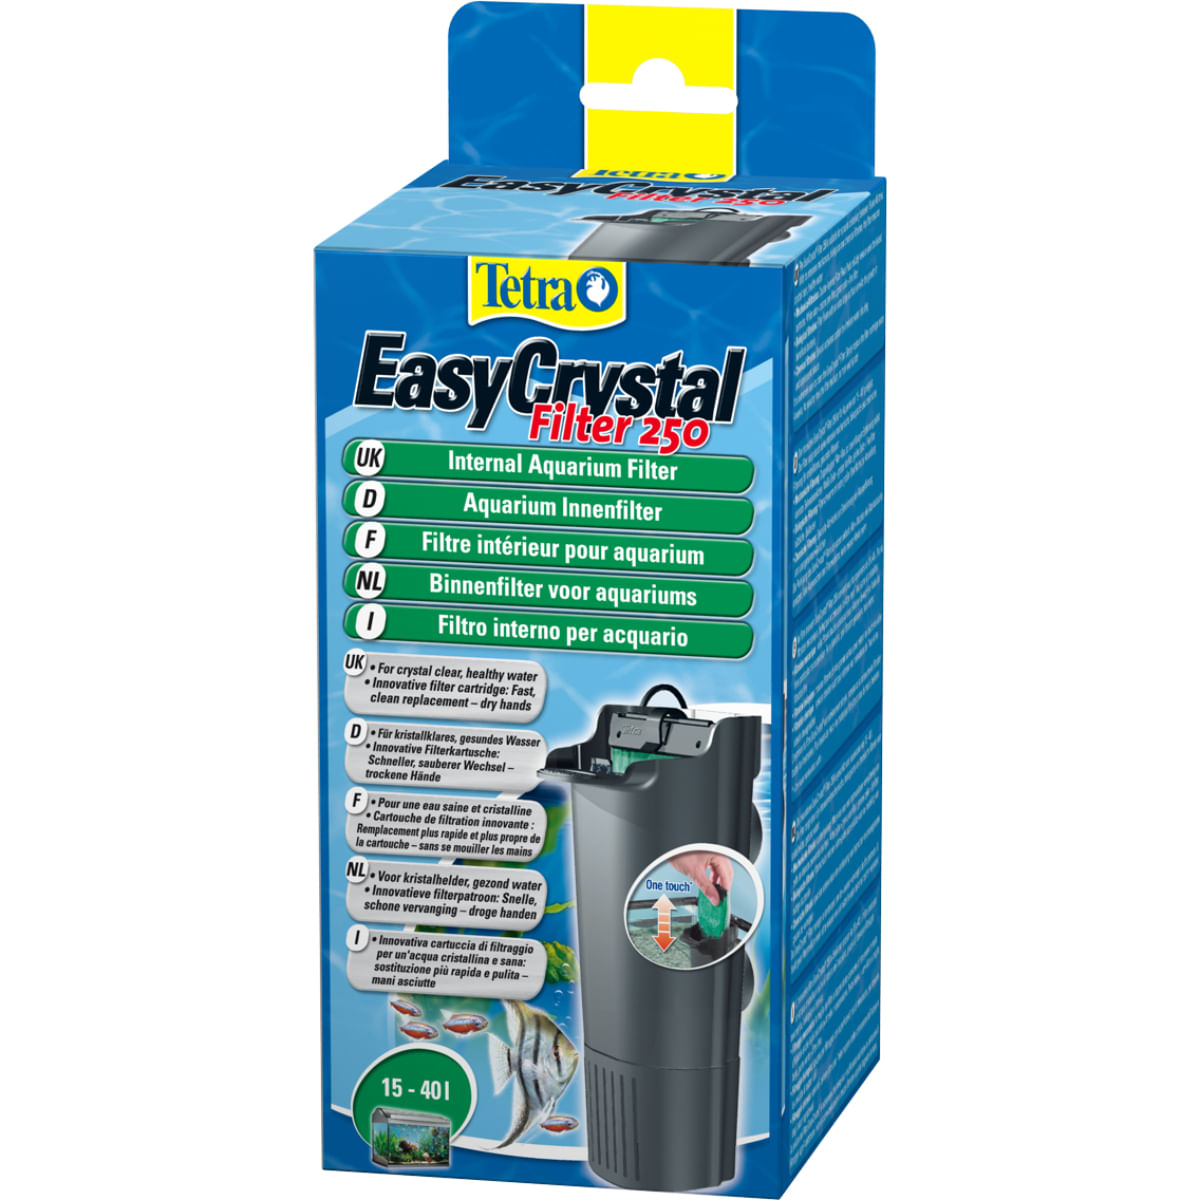 Filtro per Acquario EasyCrystal 250 1 PZ